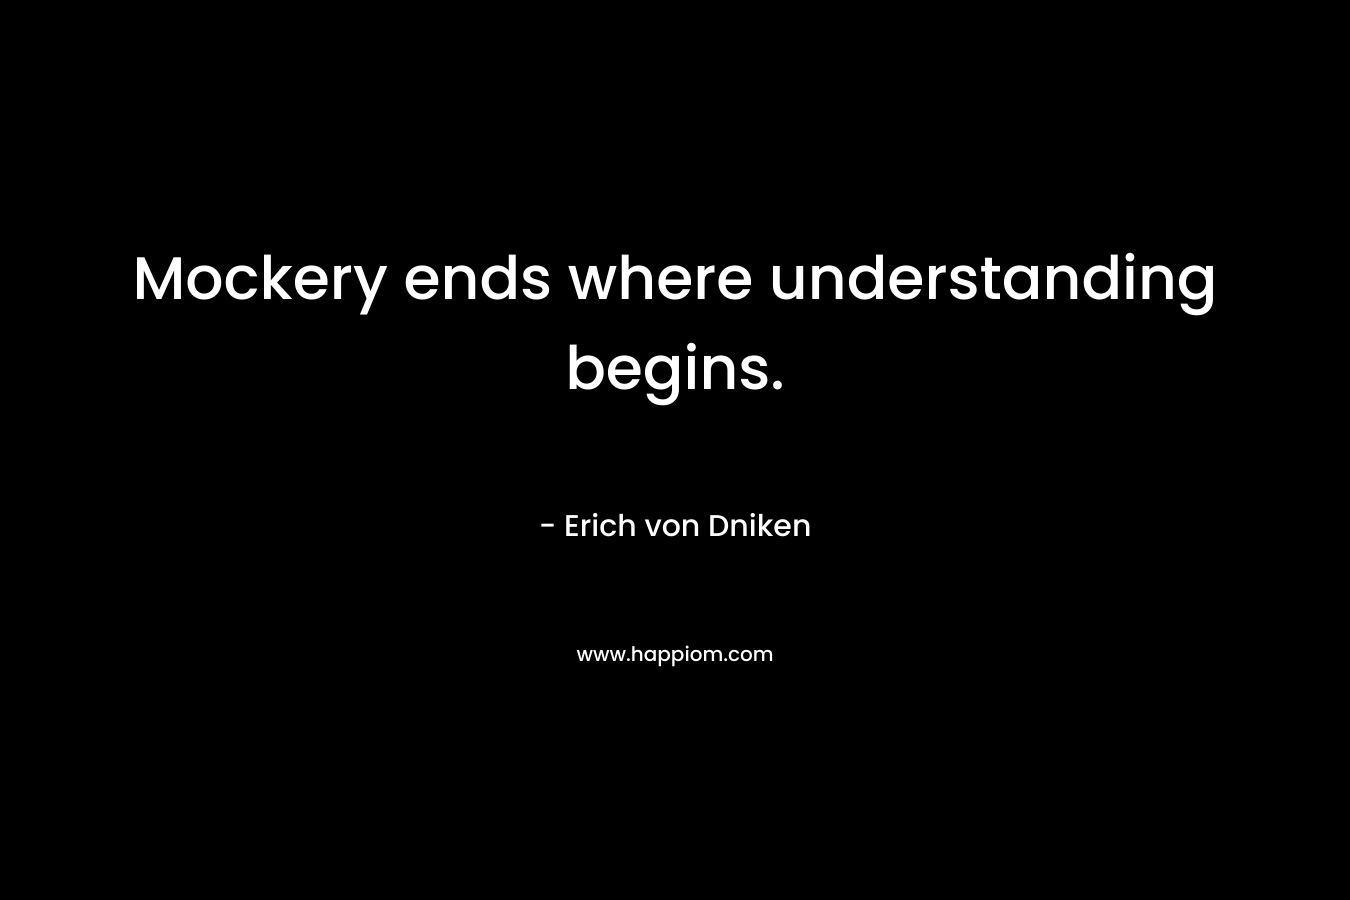 Mockery ends where understanding begins.